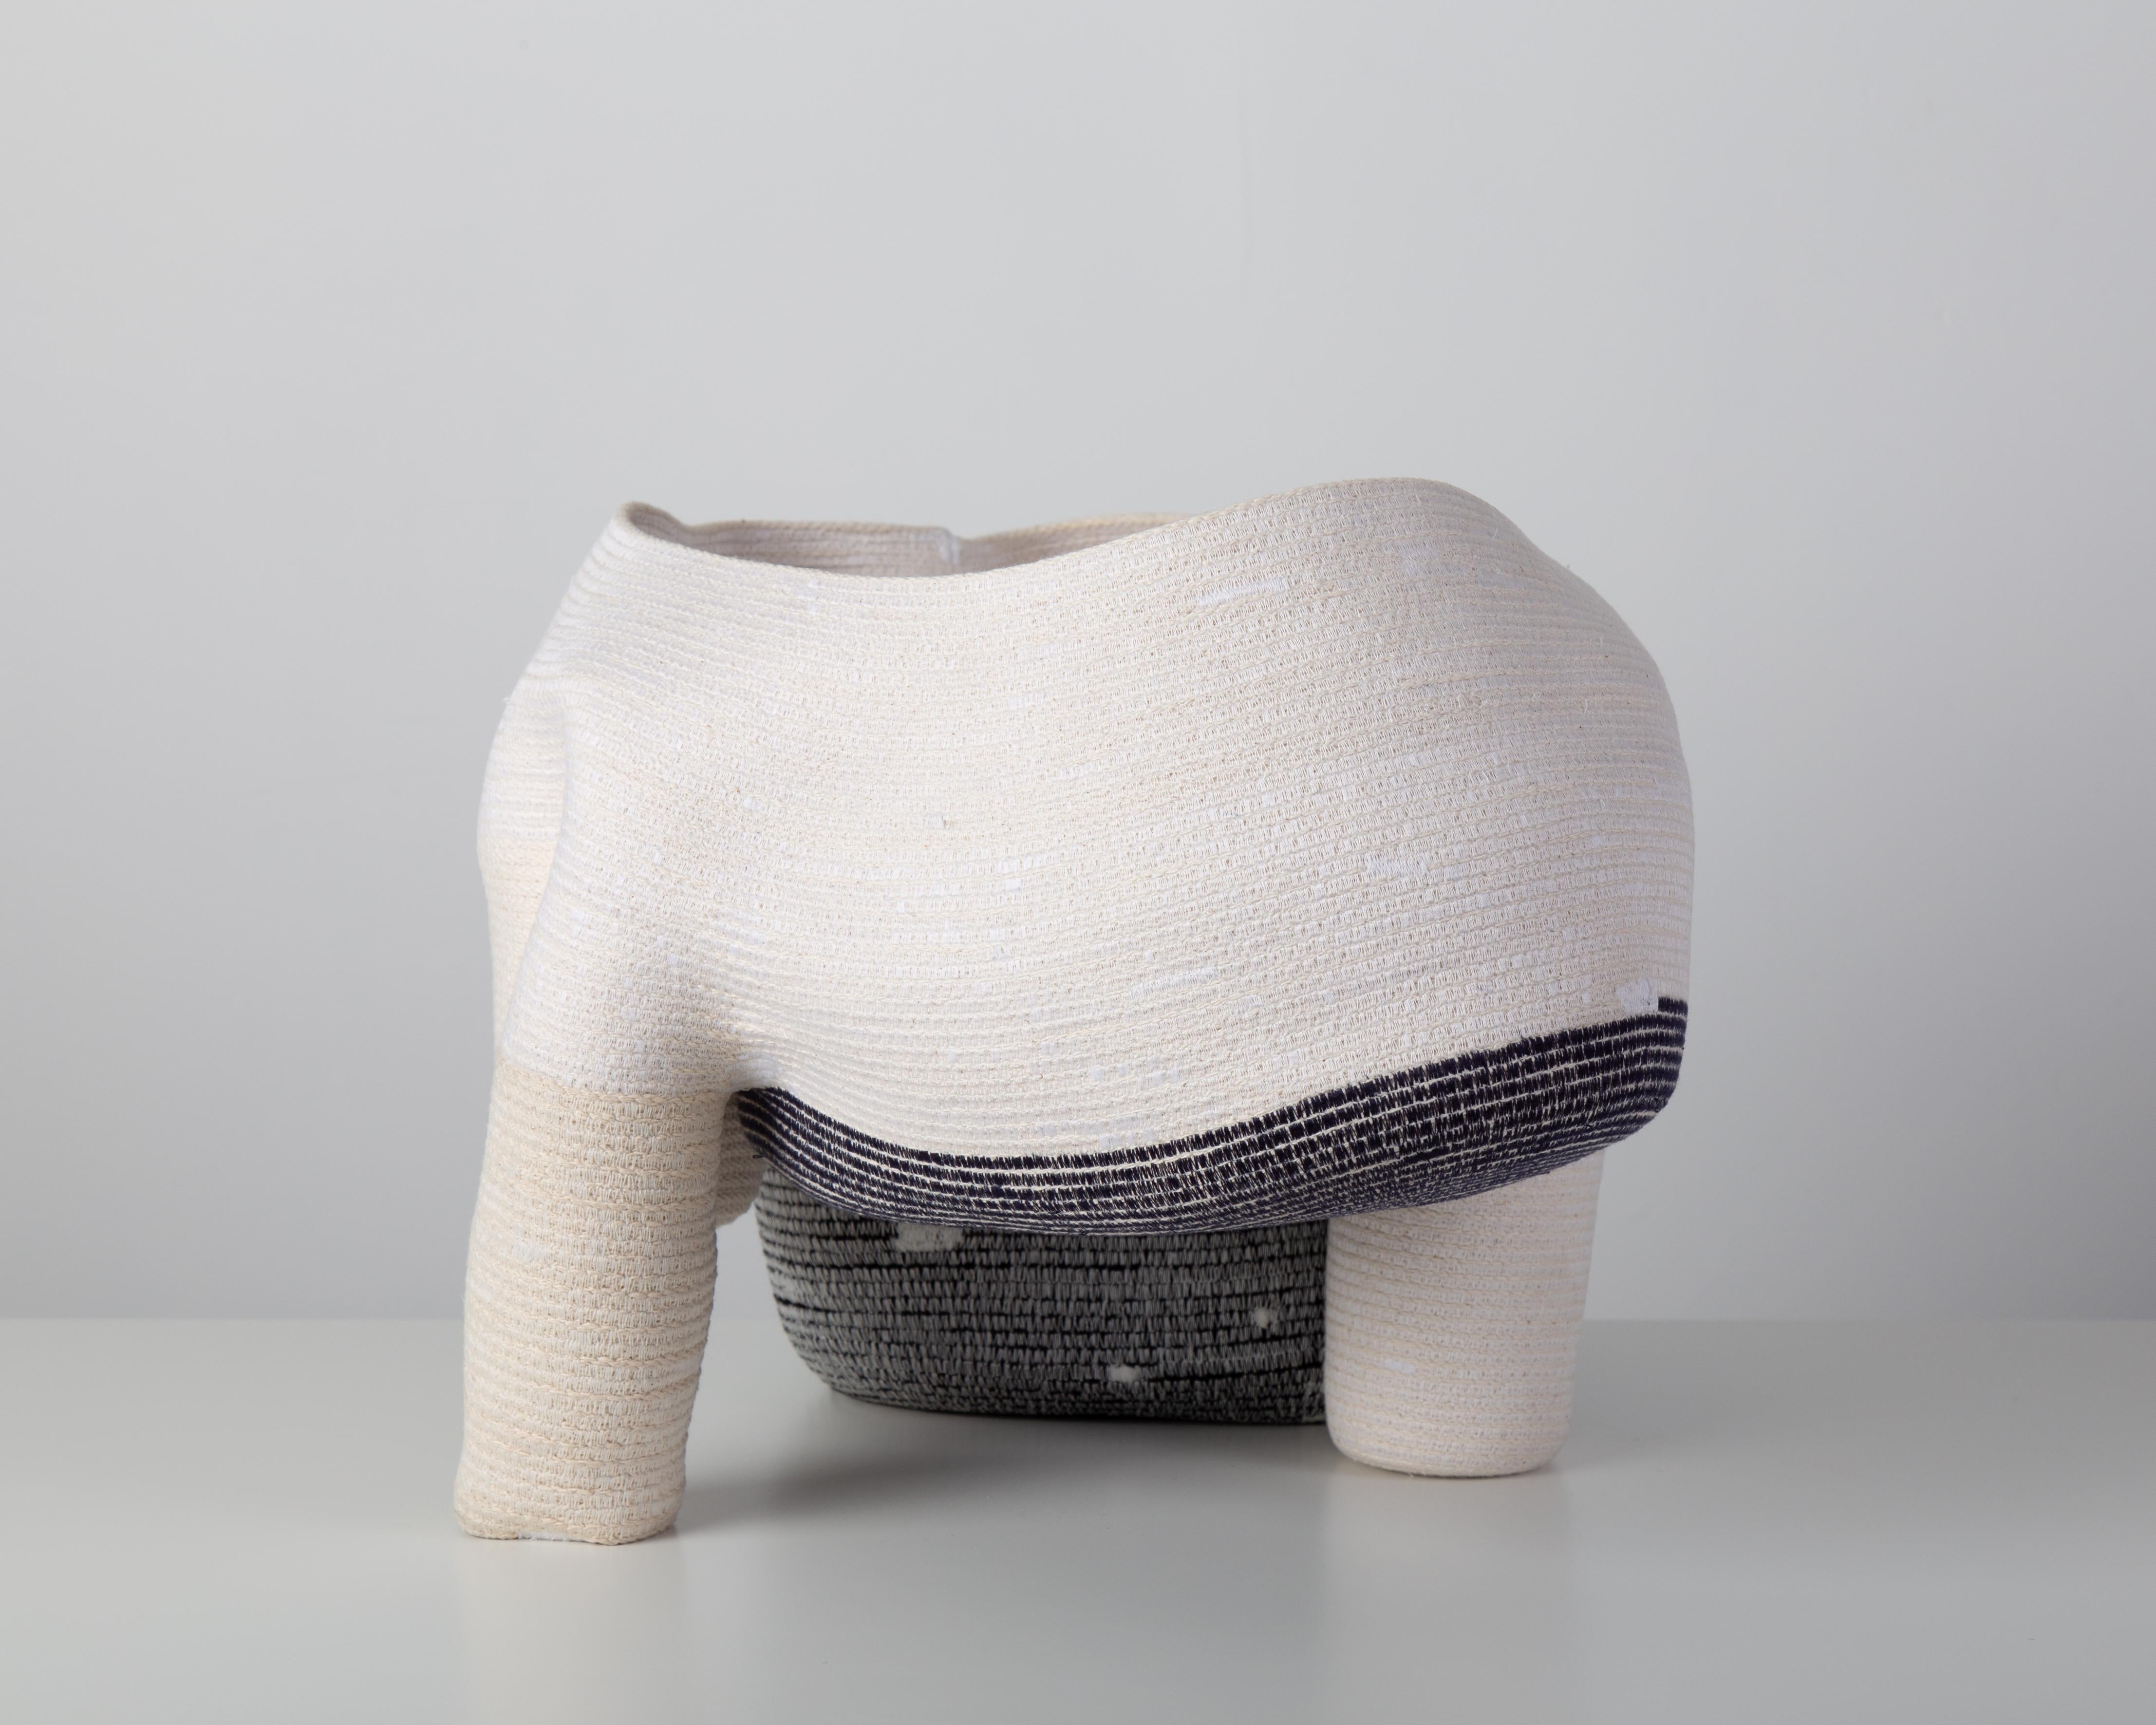 Nord-américain « Vase sans titre de 15 cm » Sculpture en fibre de coton enroulée et cousue de Doug Johnston